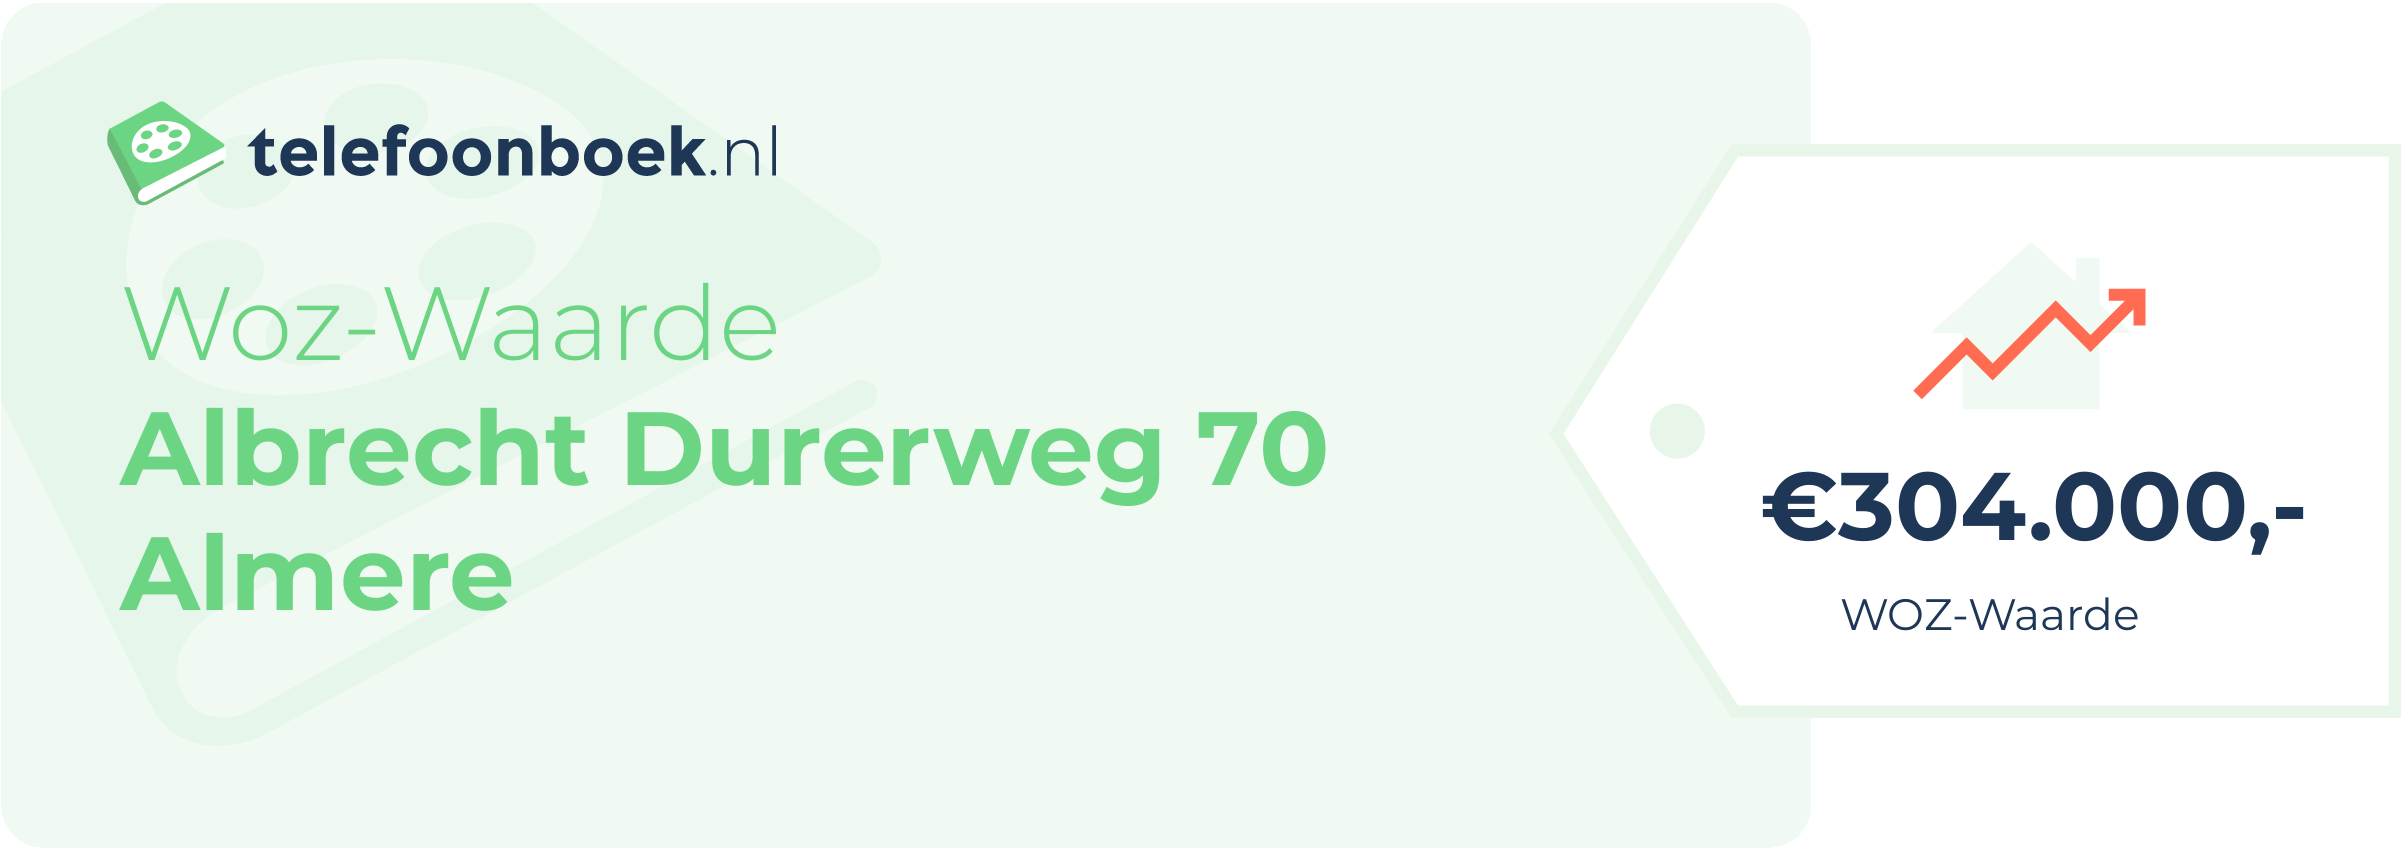 WOZ-waarde Albrecht Durerweg 70 Almere